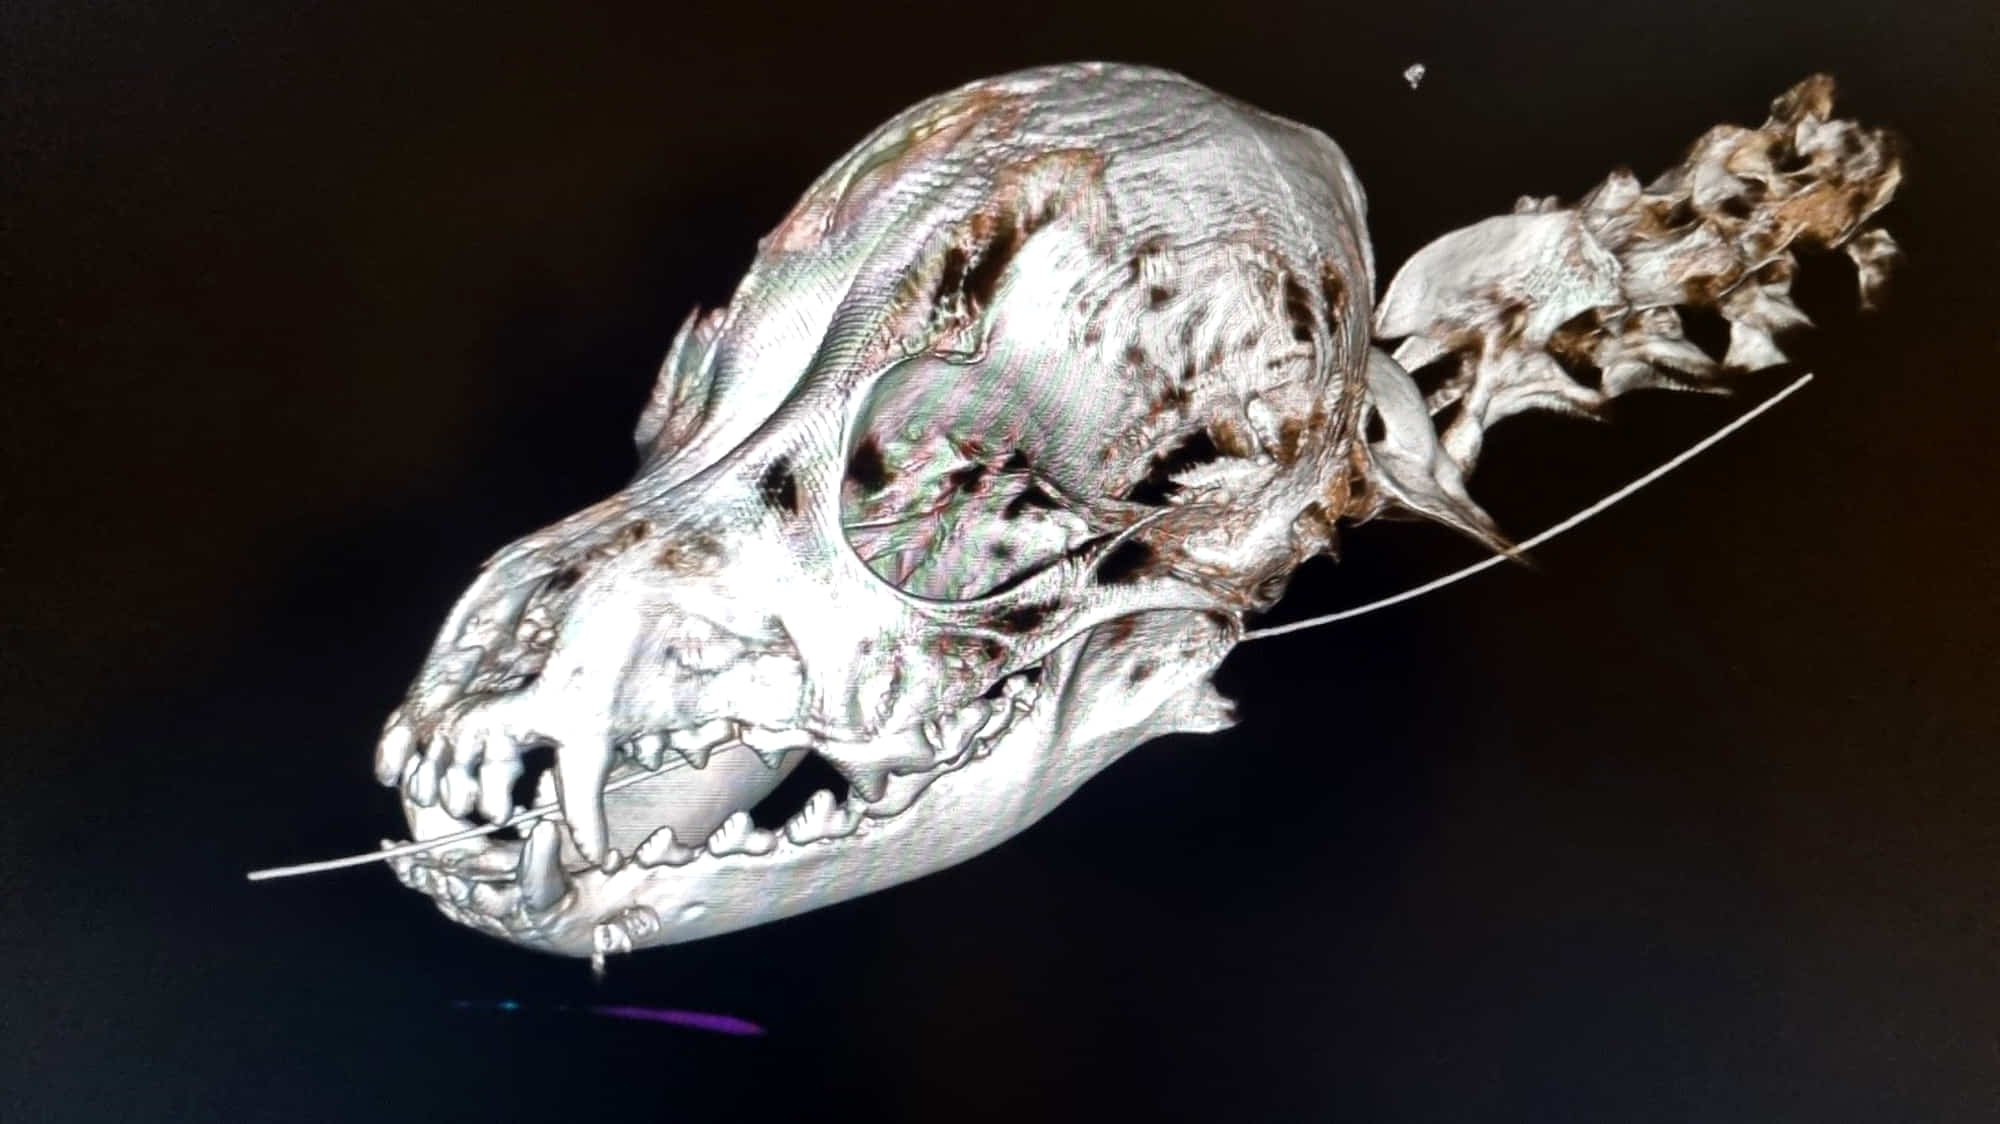 Alle Transistor Sæt ud CT-scanning af kæledyr: undersøgelse af hele dyrekroppen - Kalundborg  Dyrehospital